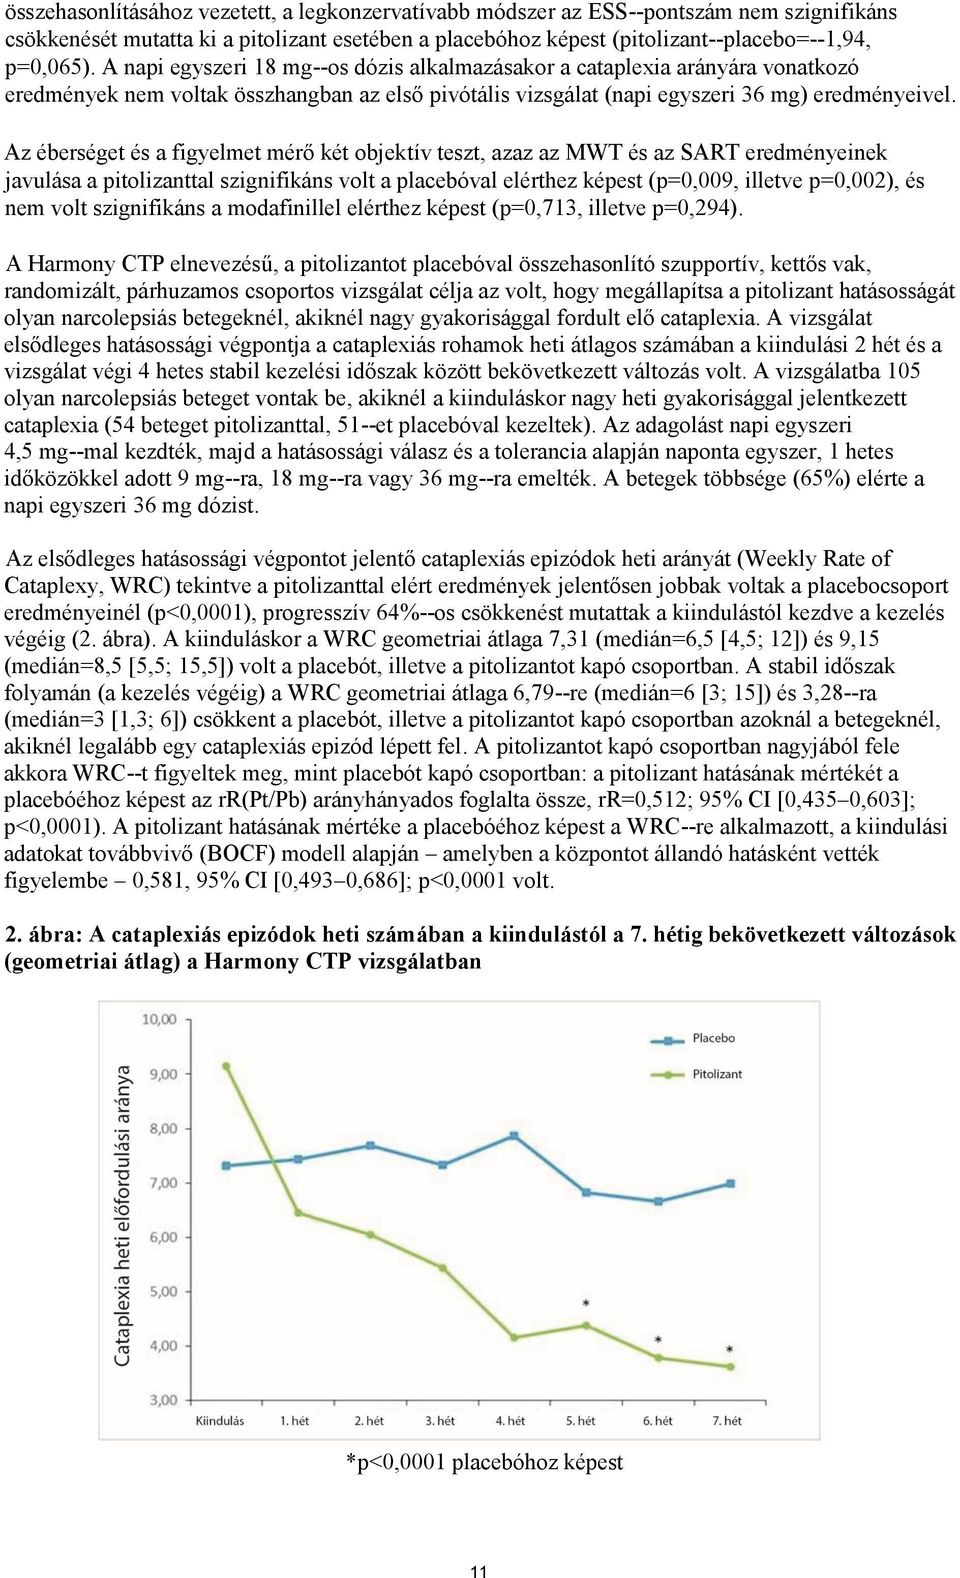 Az éberséget és a figyelmet mérő két objektív teszt, azaz az MWT és az SART eredményeinek javulása a pitolizanttal szignifikáns volt a placebóval elérthez képest (p=0,009, illetve p=0,002), és nem